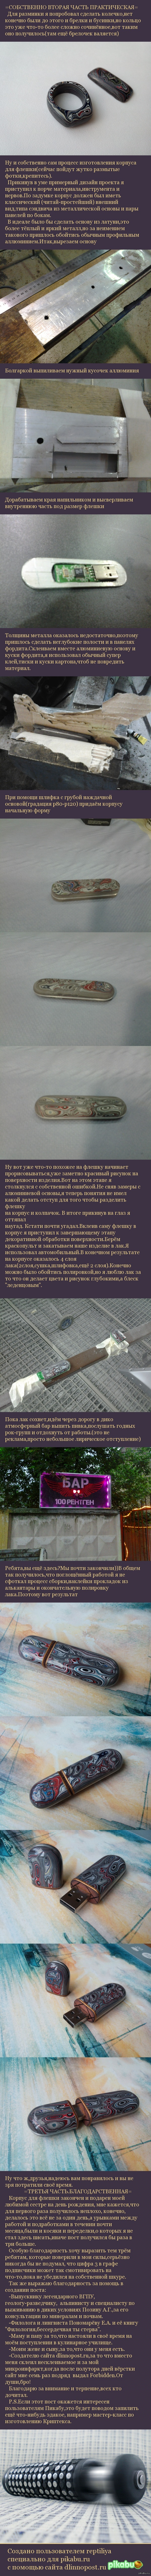     .. . - .  <a href="http://pikabu.ru/story/korpus_dlya_fleshki_iz_forditamkchast_pervaya_2461480">http://pikabu.ru/story/_2461480</a>